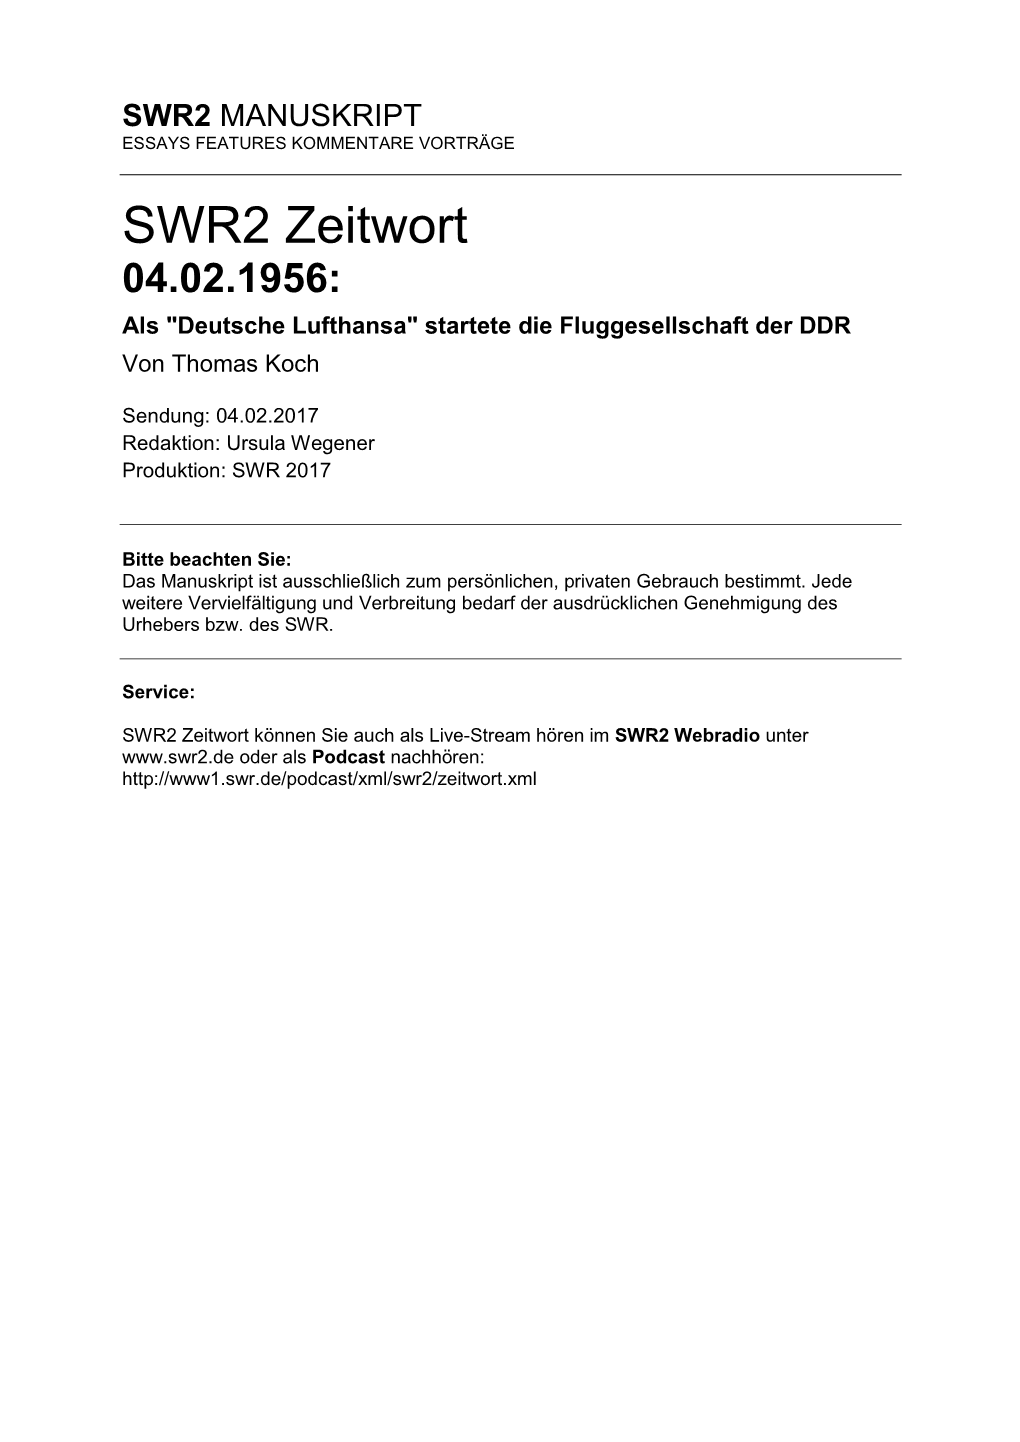 SWR2 Zeitwort 04.02.1956: Als "Deutsche Lufthansa" Startete Die Fluggesellschaft Der DDR Von Thomas Koch